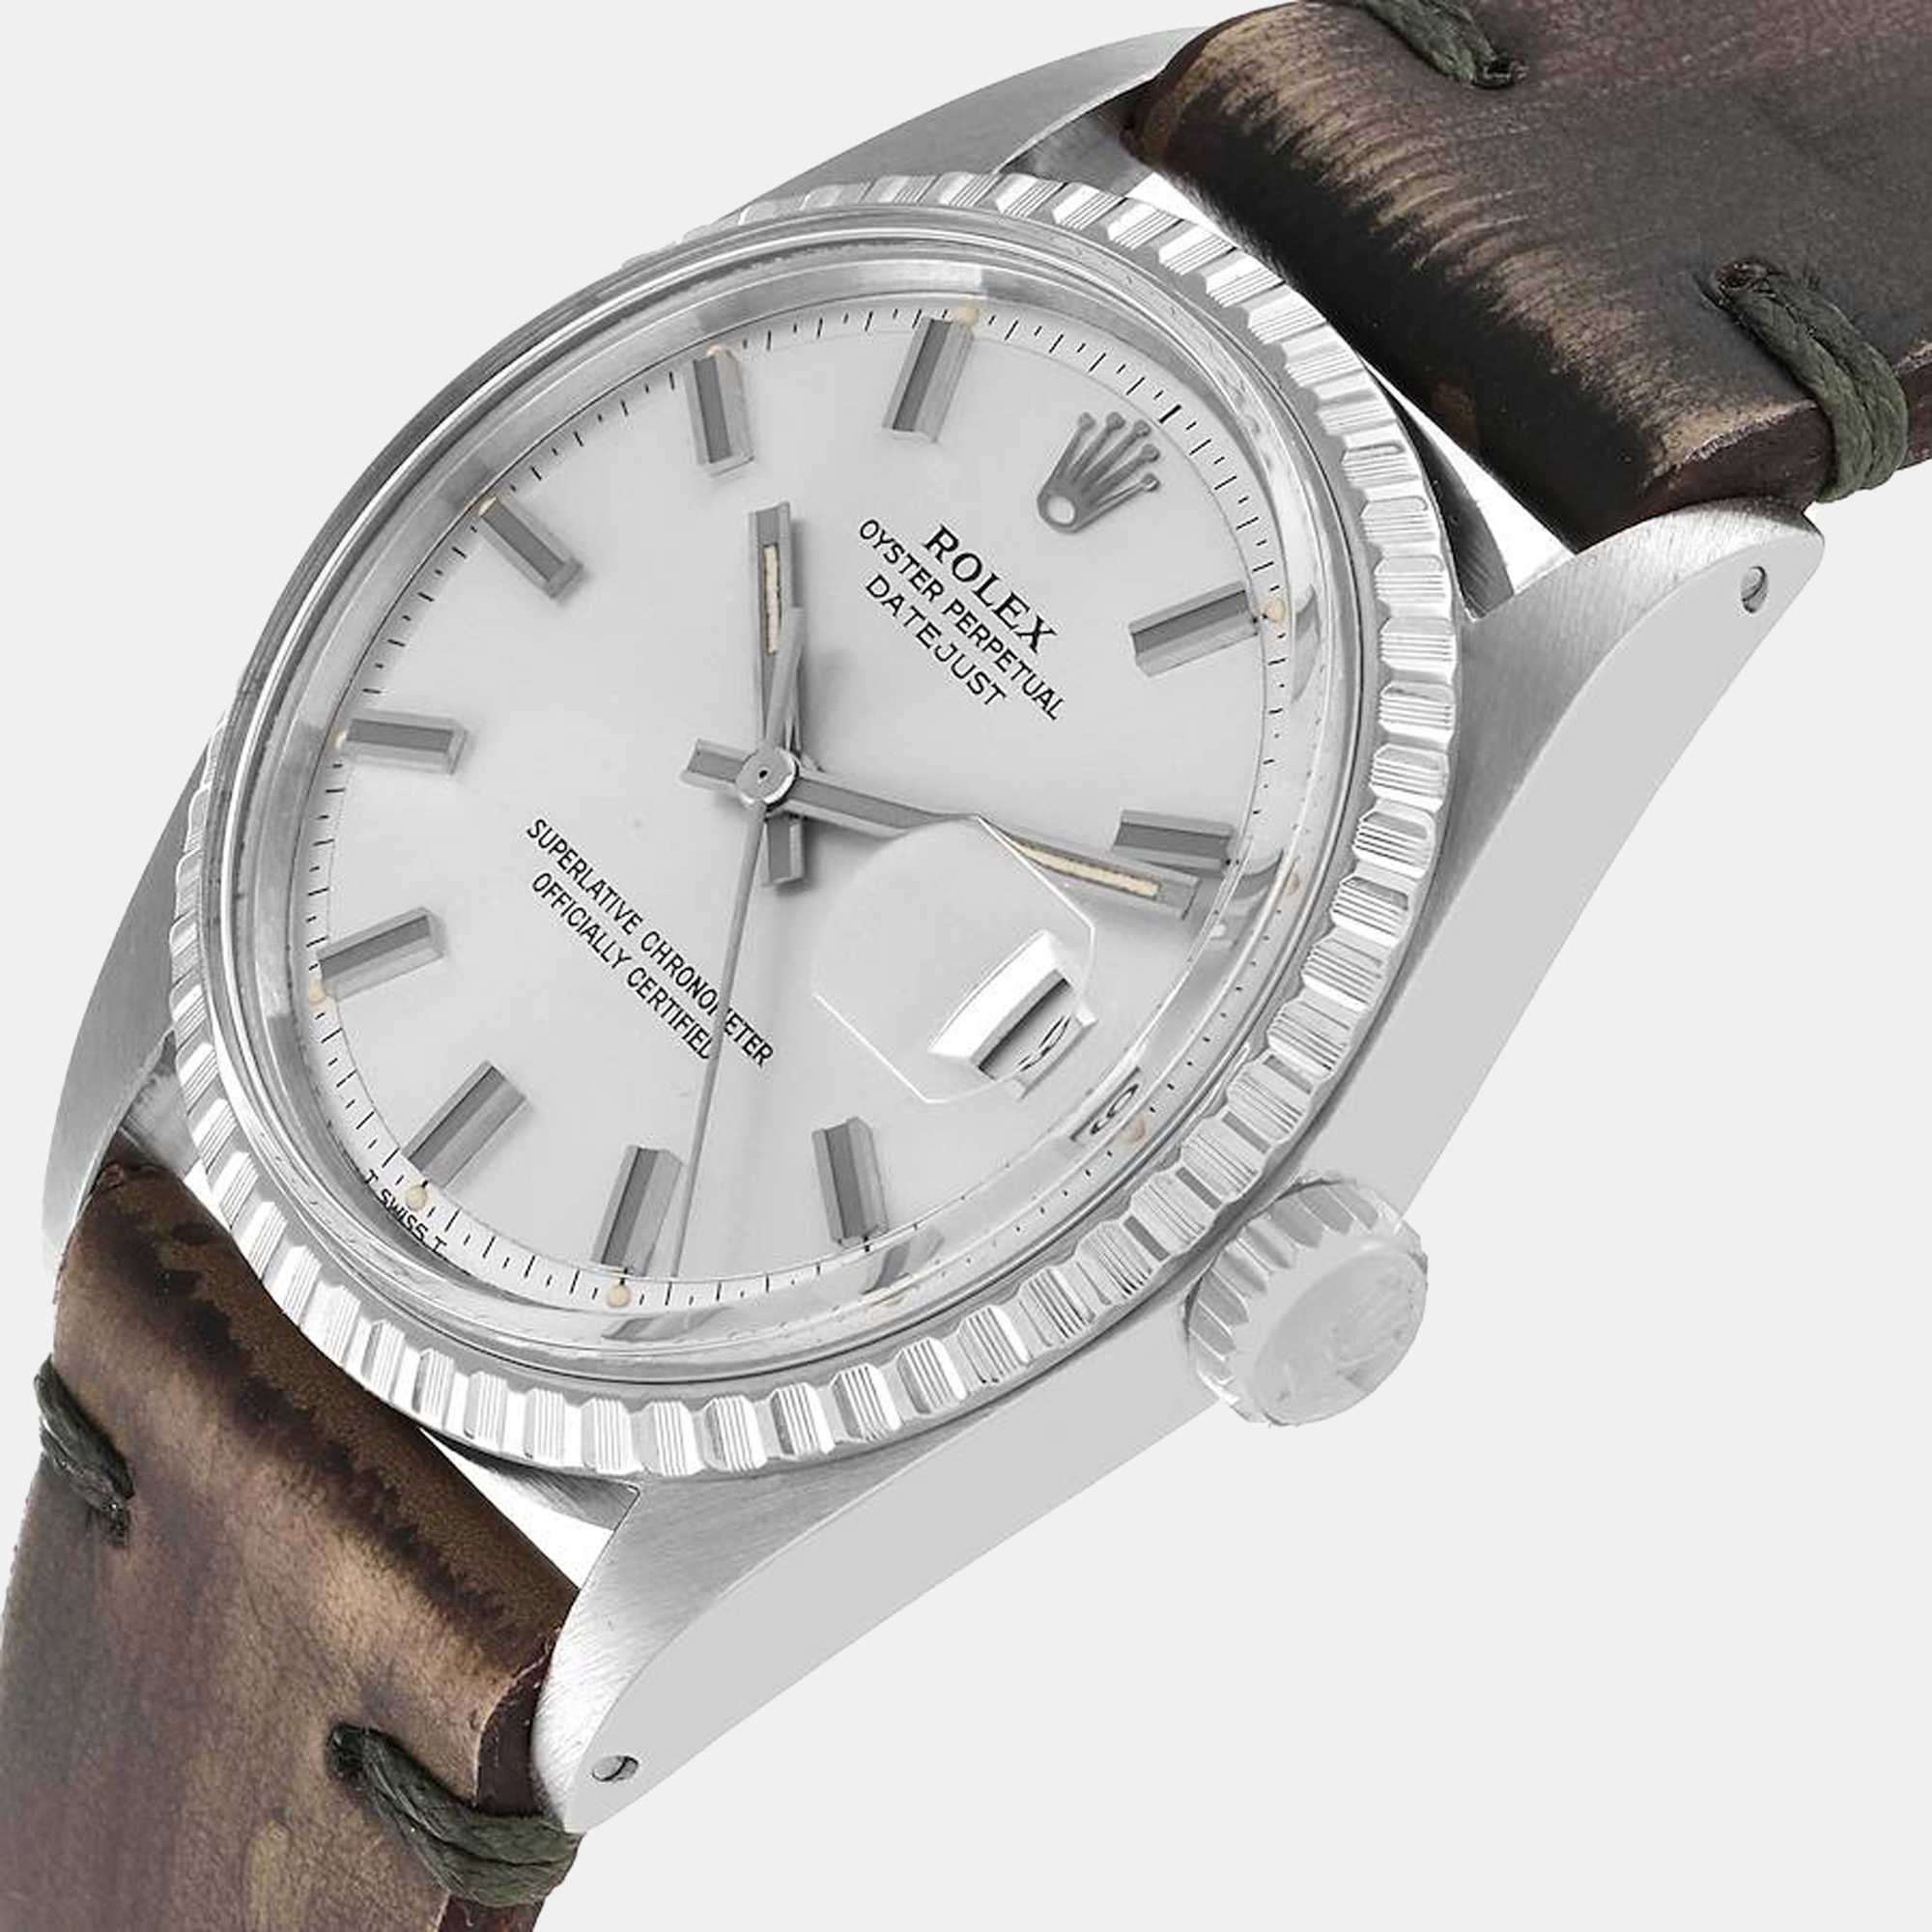 

Rolex Silver Stainless Steel Datejust Vintage 1603 Men's Wristwatch 36 mm